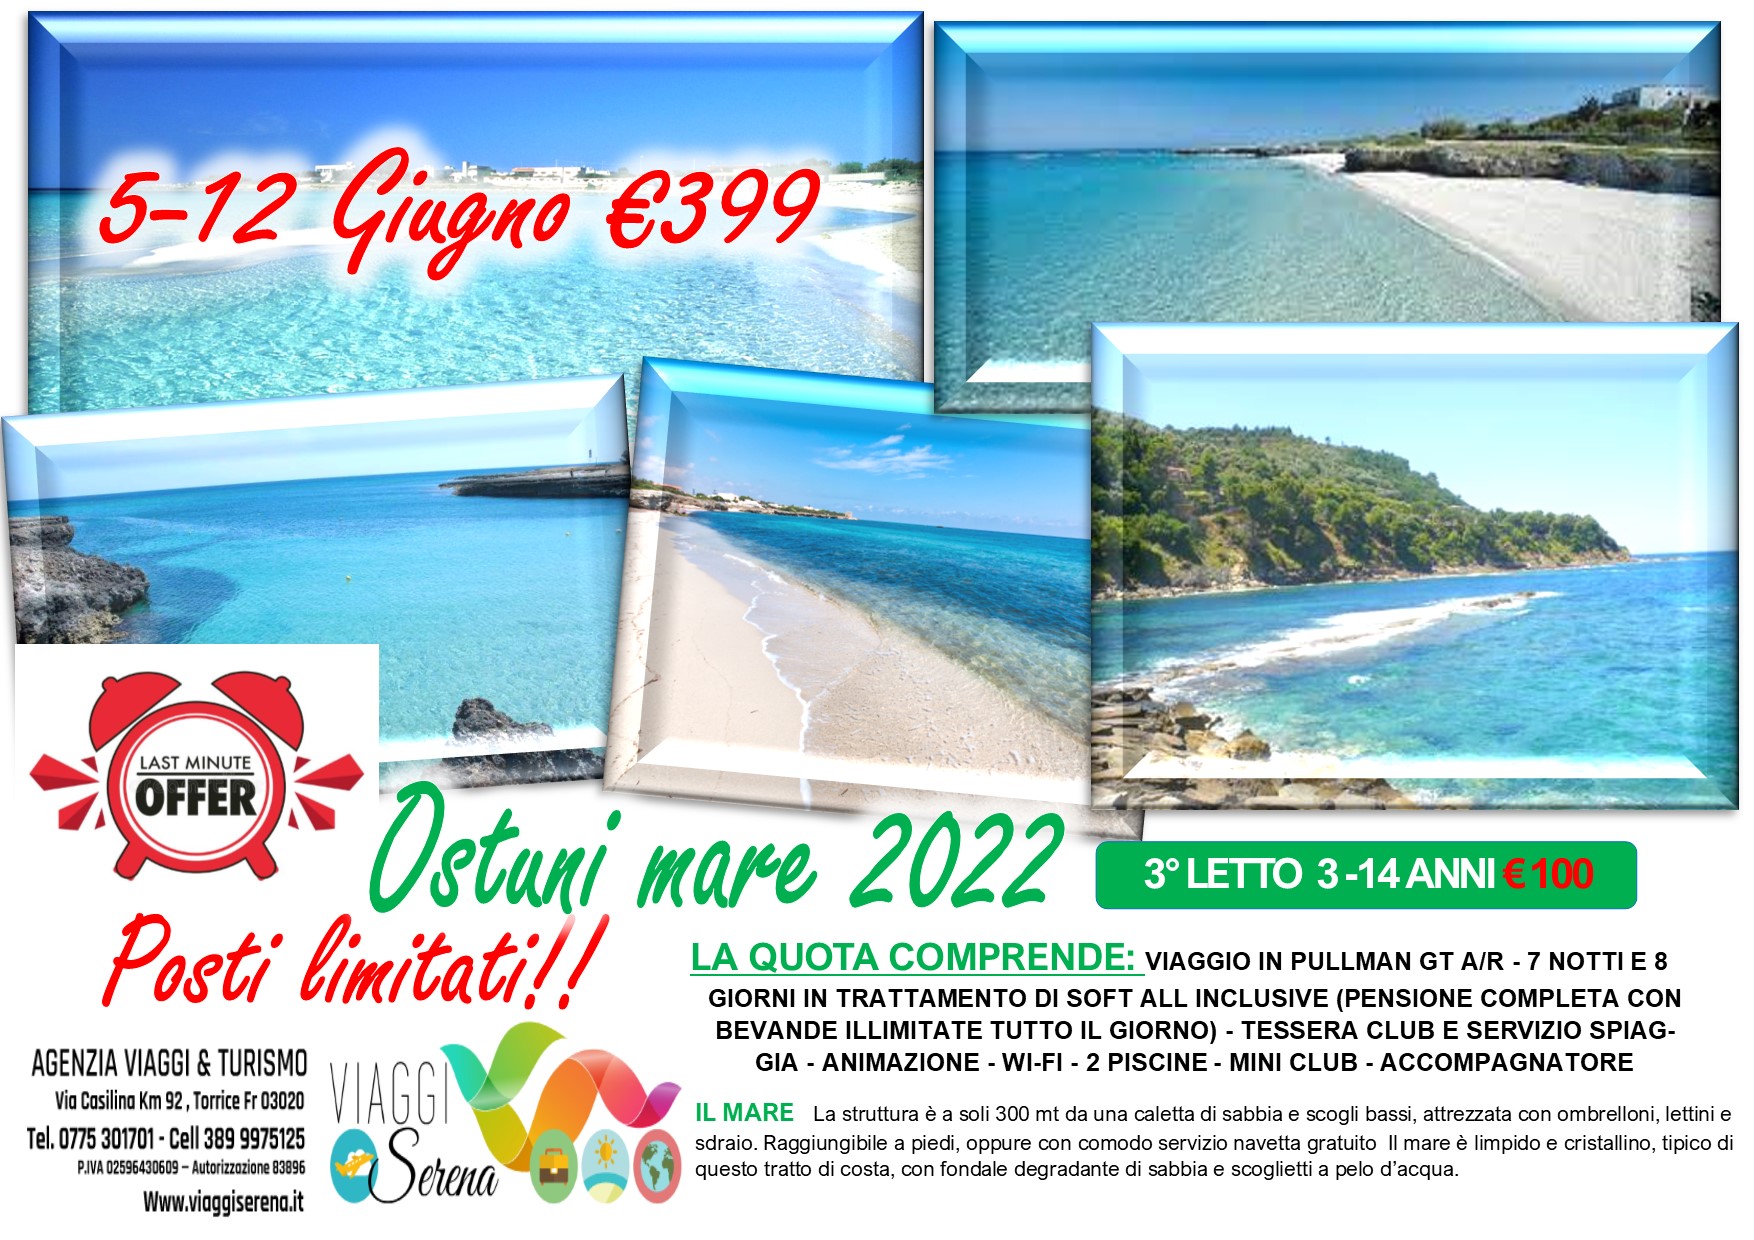 Viaggi di Gruppo: Ostuni Villaggio Mare “Last Minute”  5-12 Giugno € 399,00